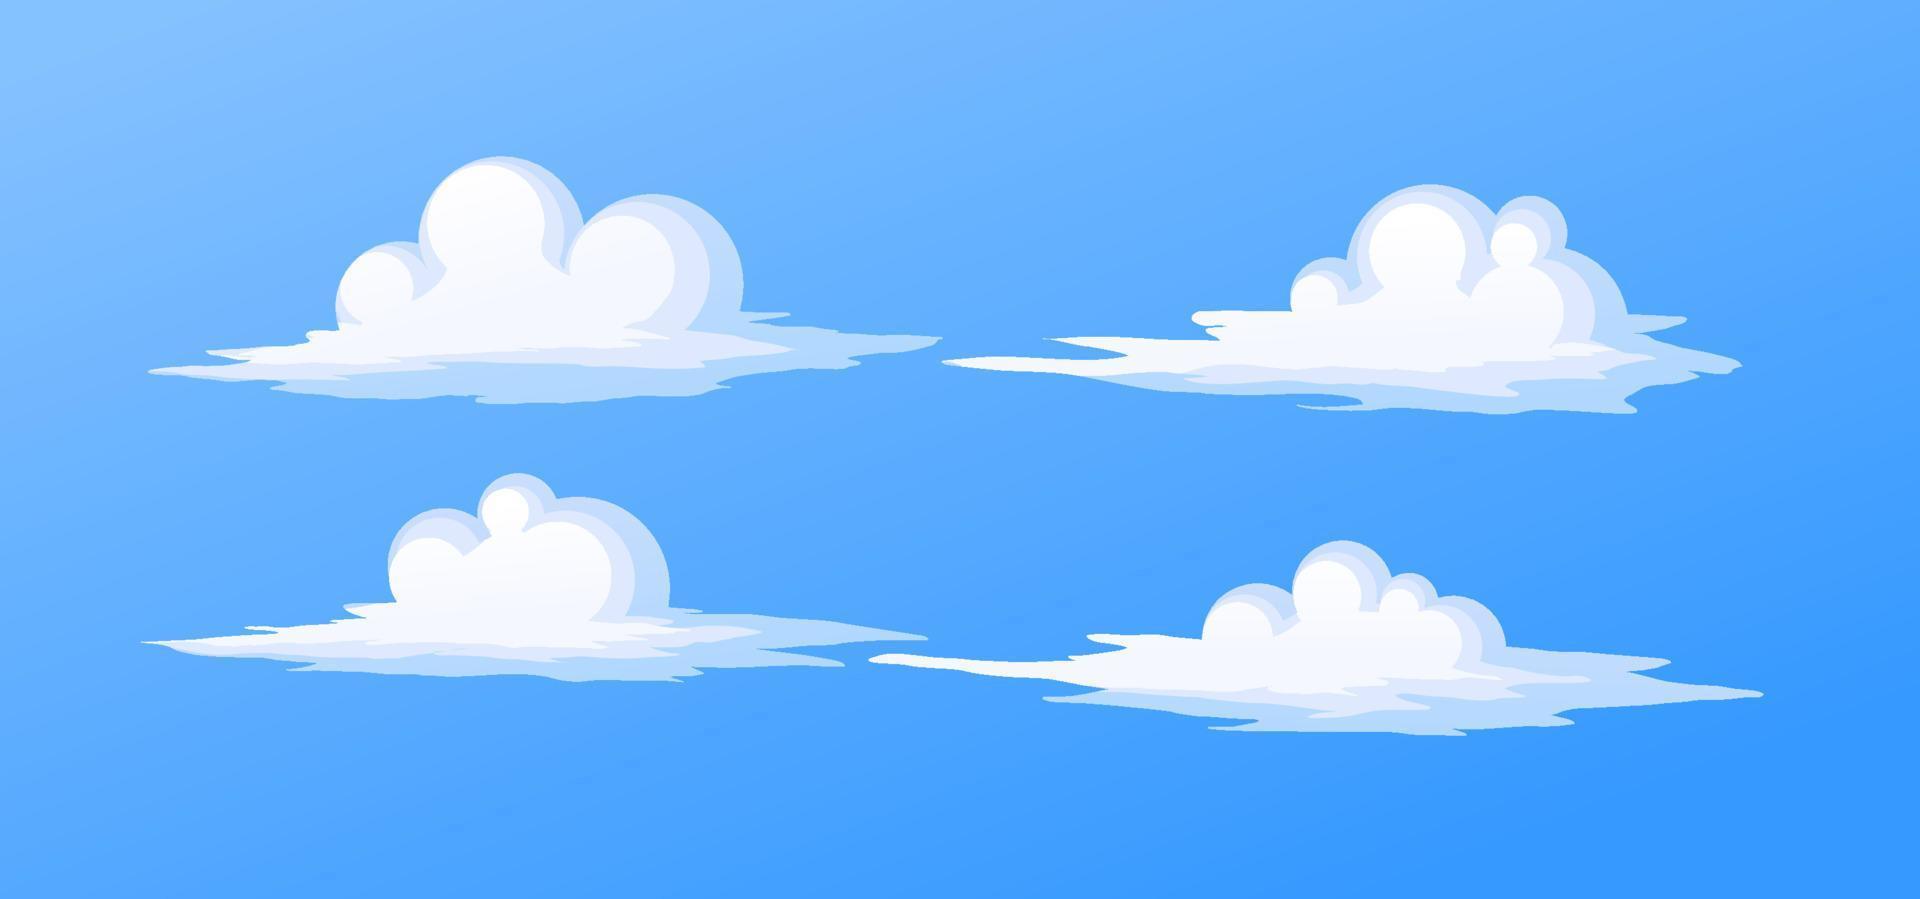 nubes blancas anime estilo de dibujos animados en el cielo azul ilustración vectorial vector